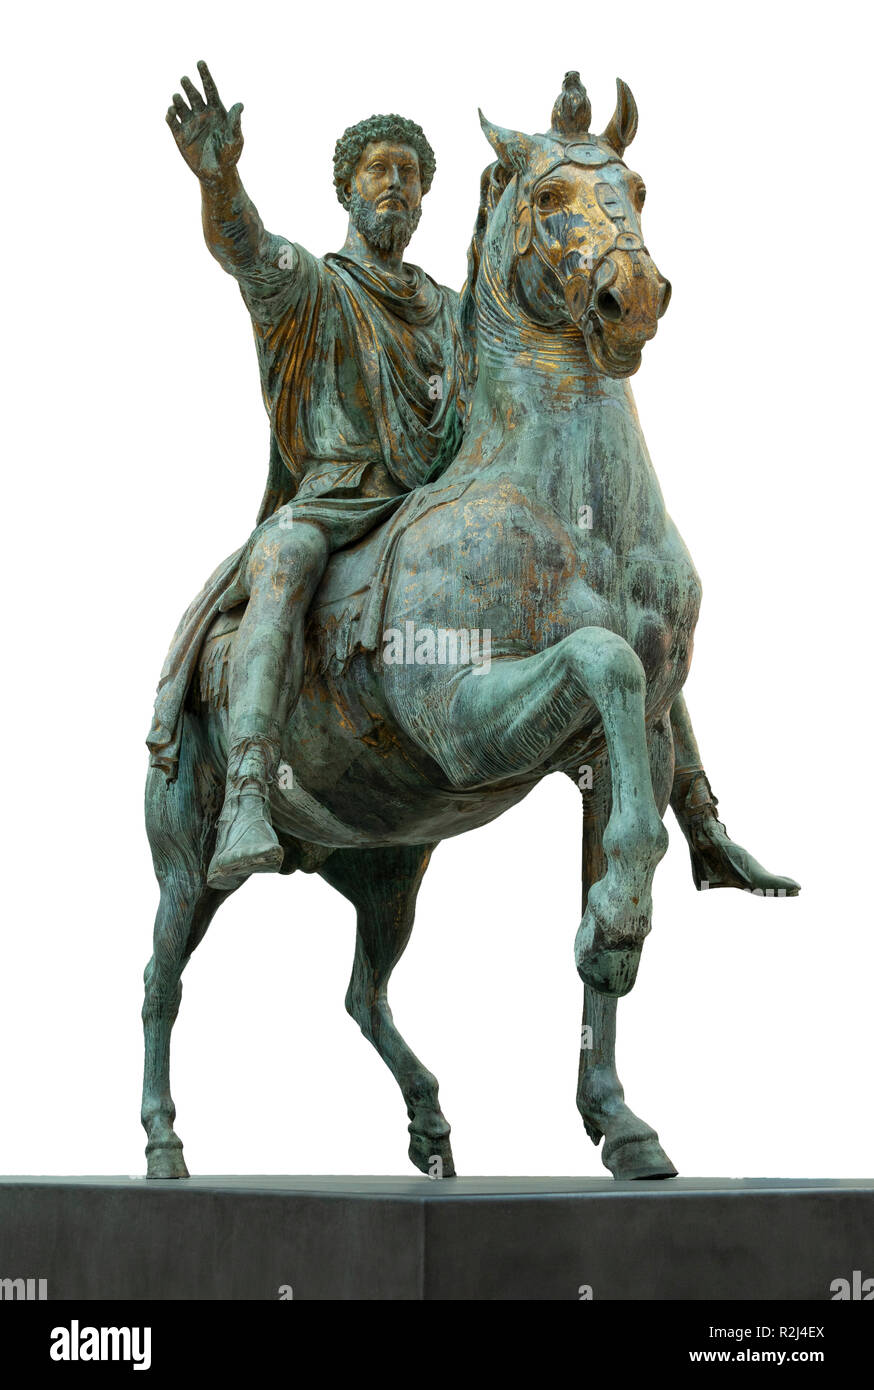 2° annuncio centuary romana, bronzo, statua equestre di Marco Aurelio nei musei Capitolini di Roma, Italia Foto Stock